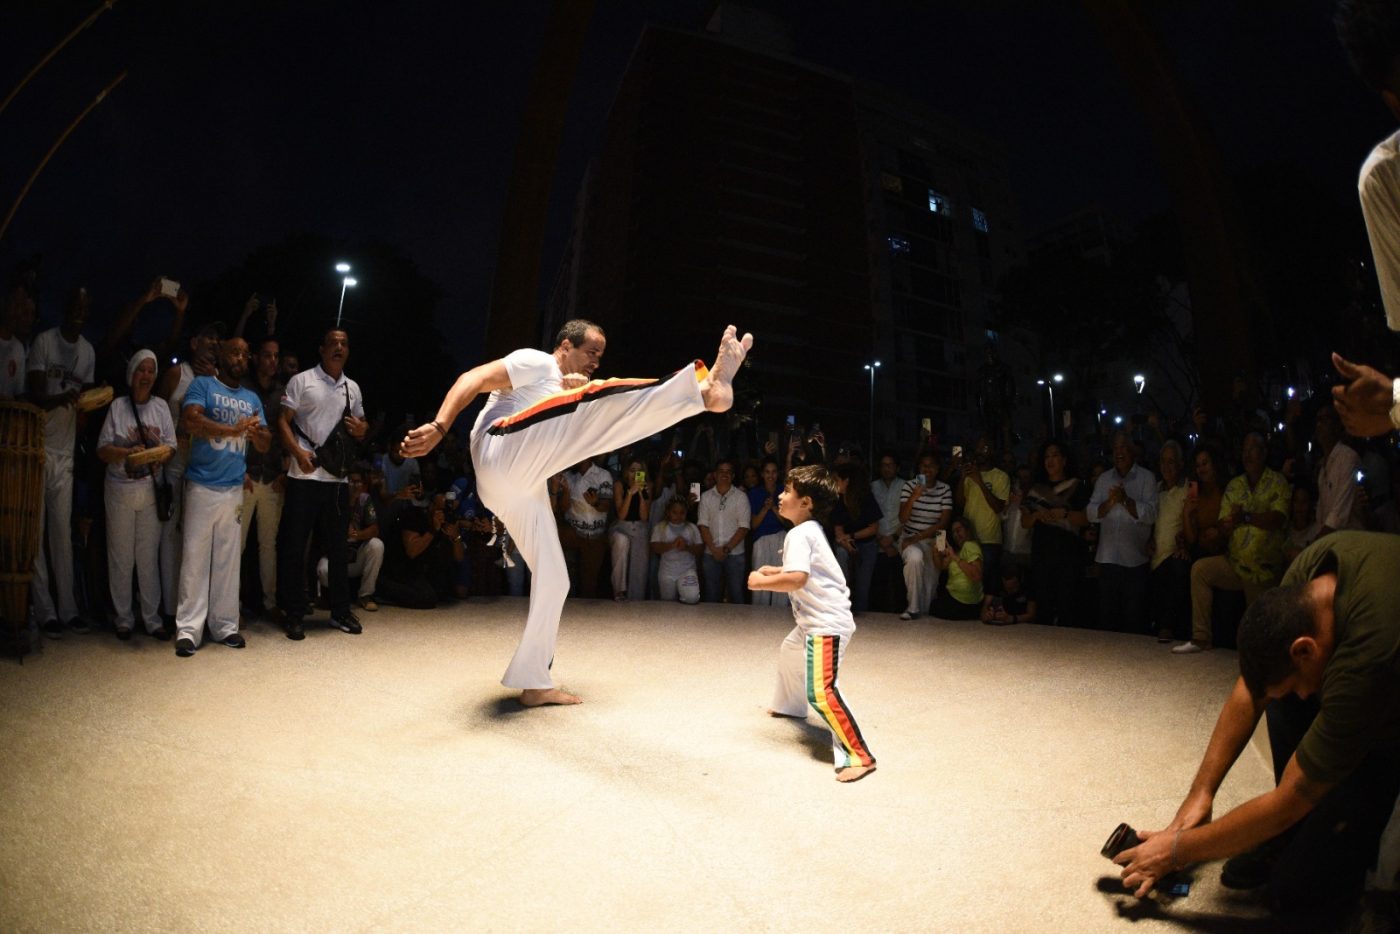 Bruno Reis joga capoeira durante inauguração de arena dedicada ao esporte: ‘Capoeirista desde criança’